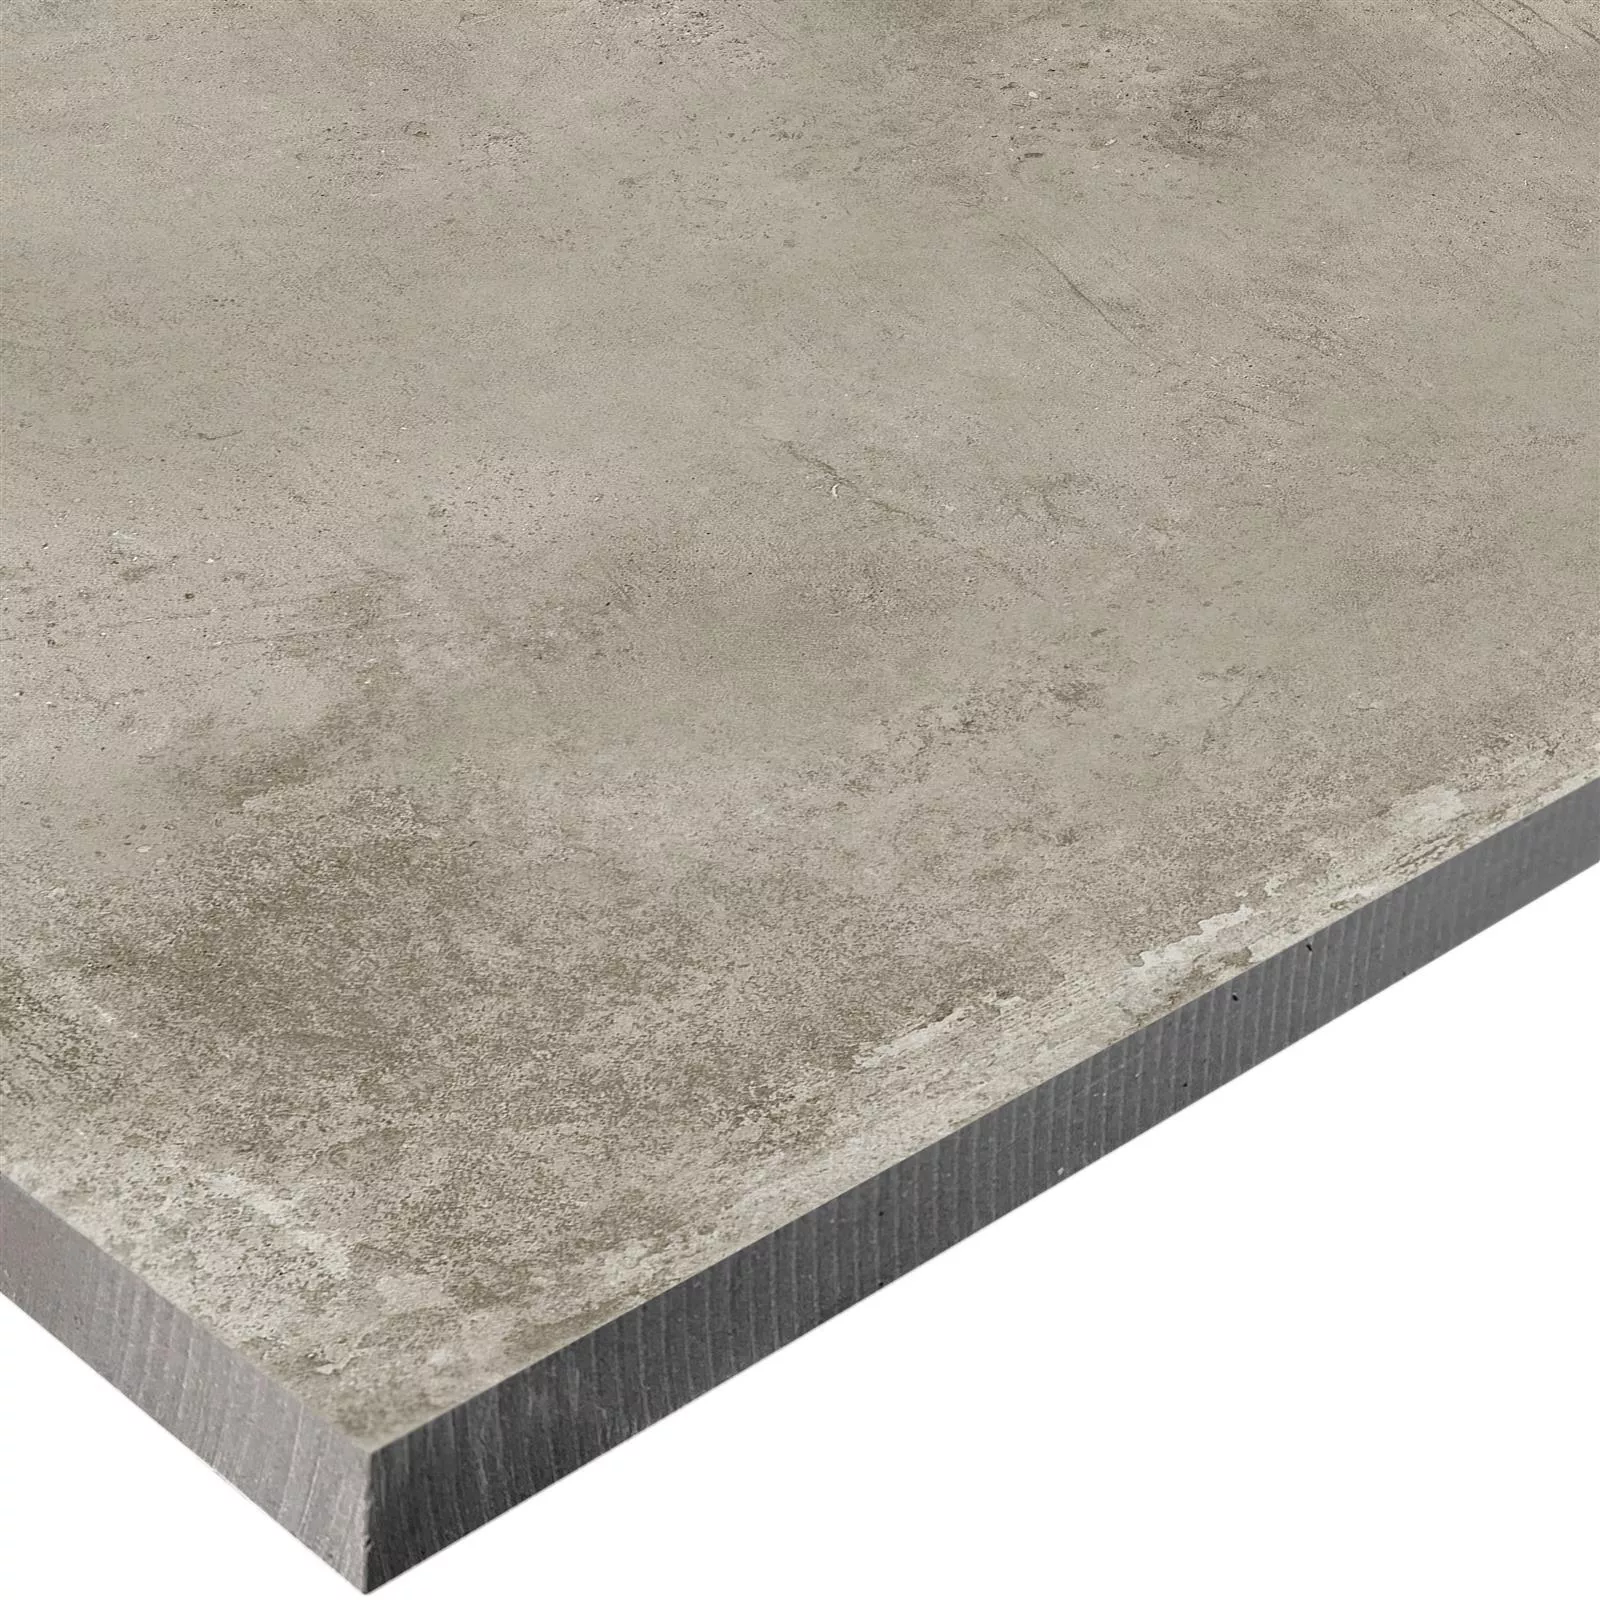 Sample Terrastegels Cement Optic Berlin Beige 100x100cm